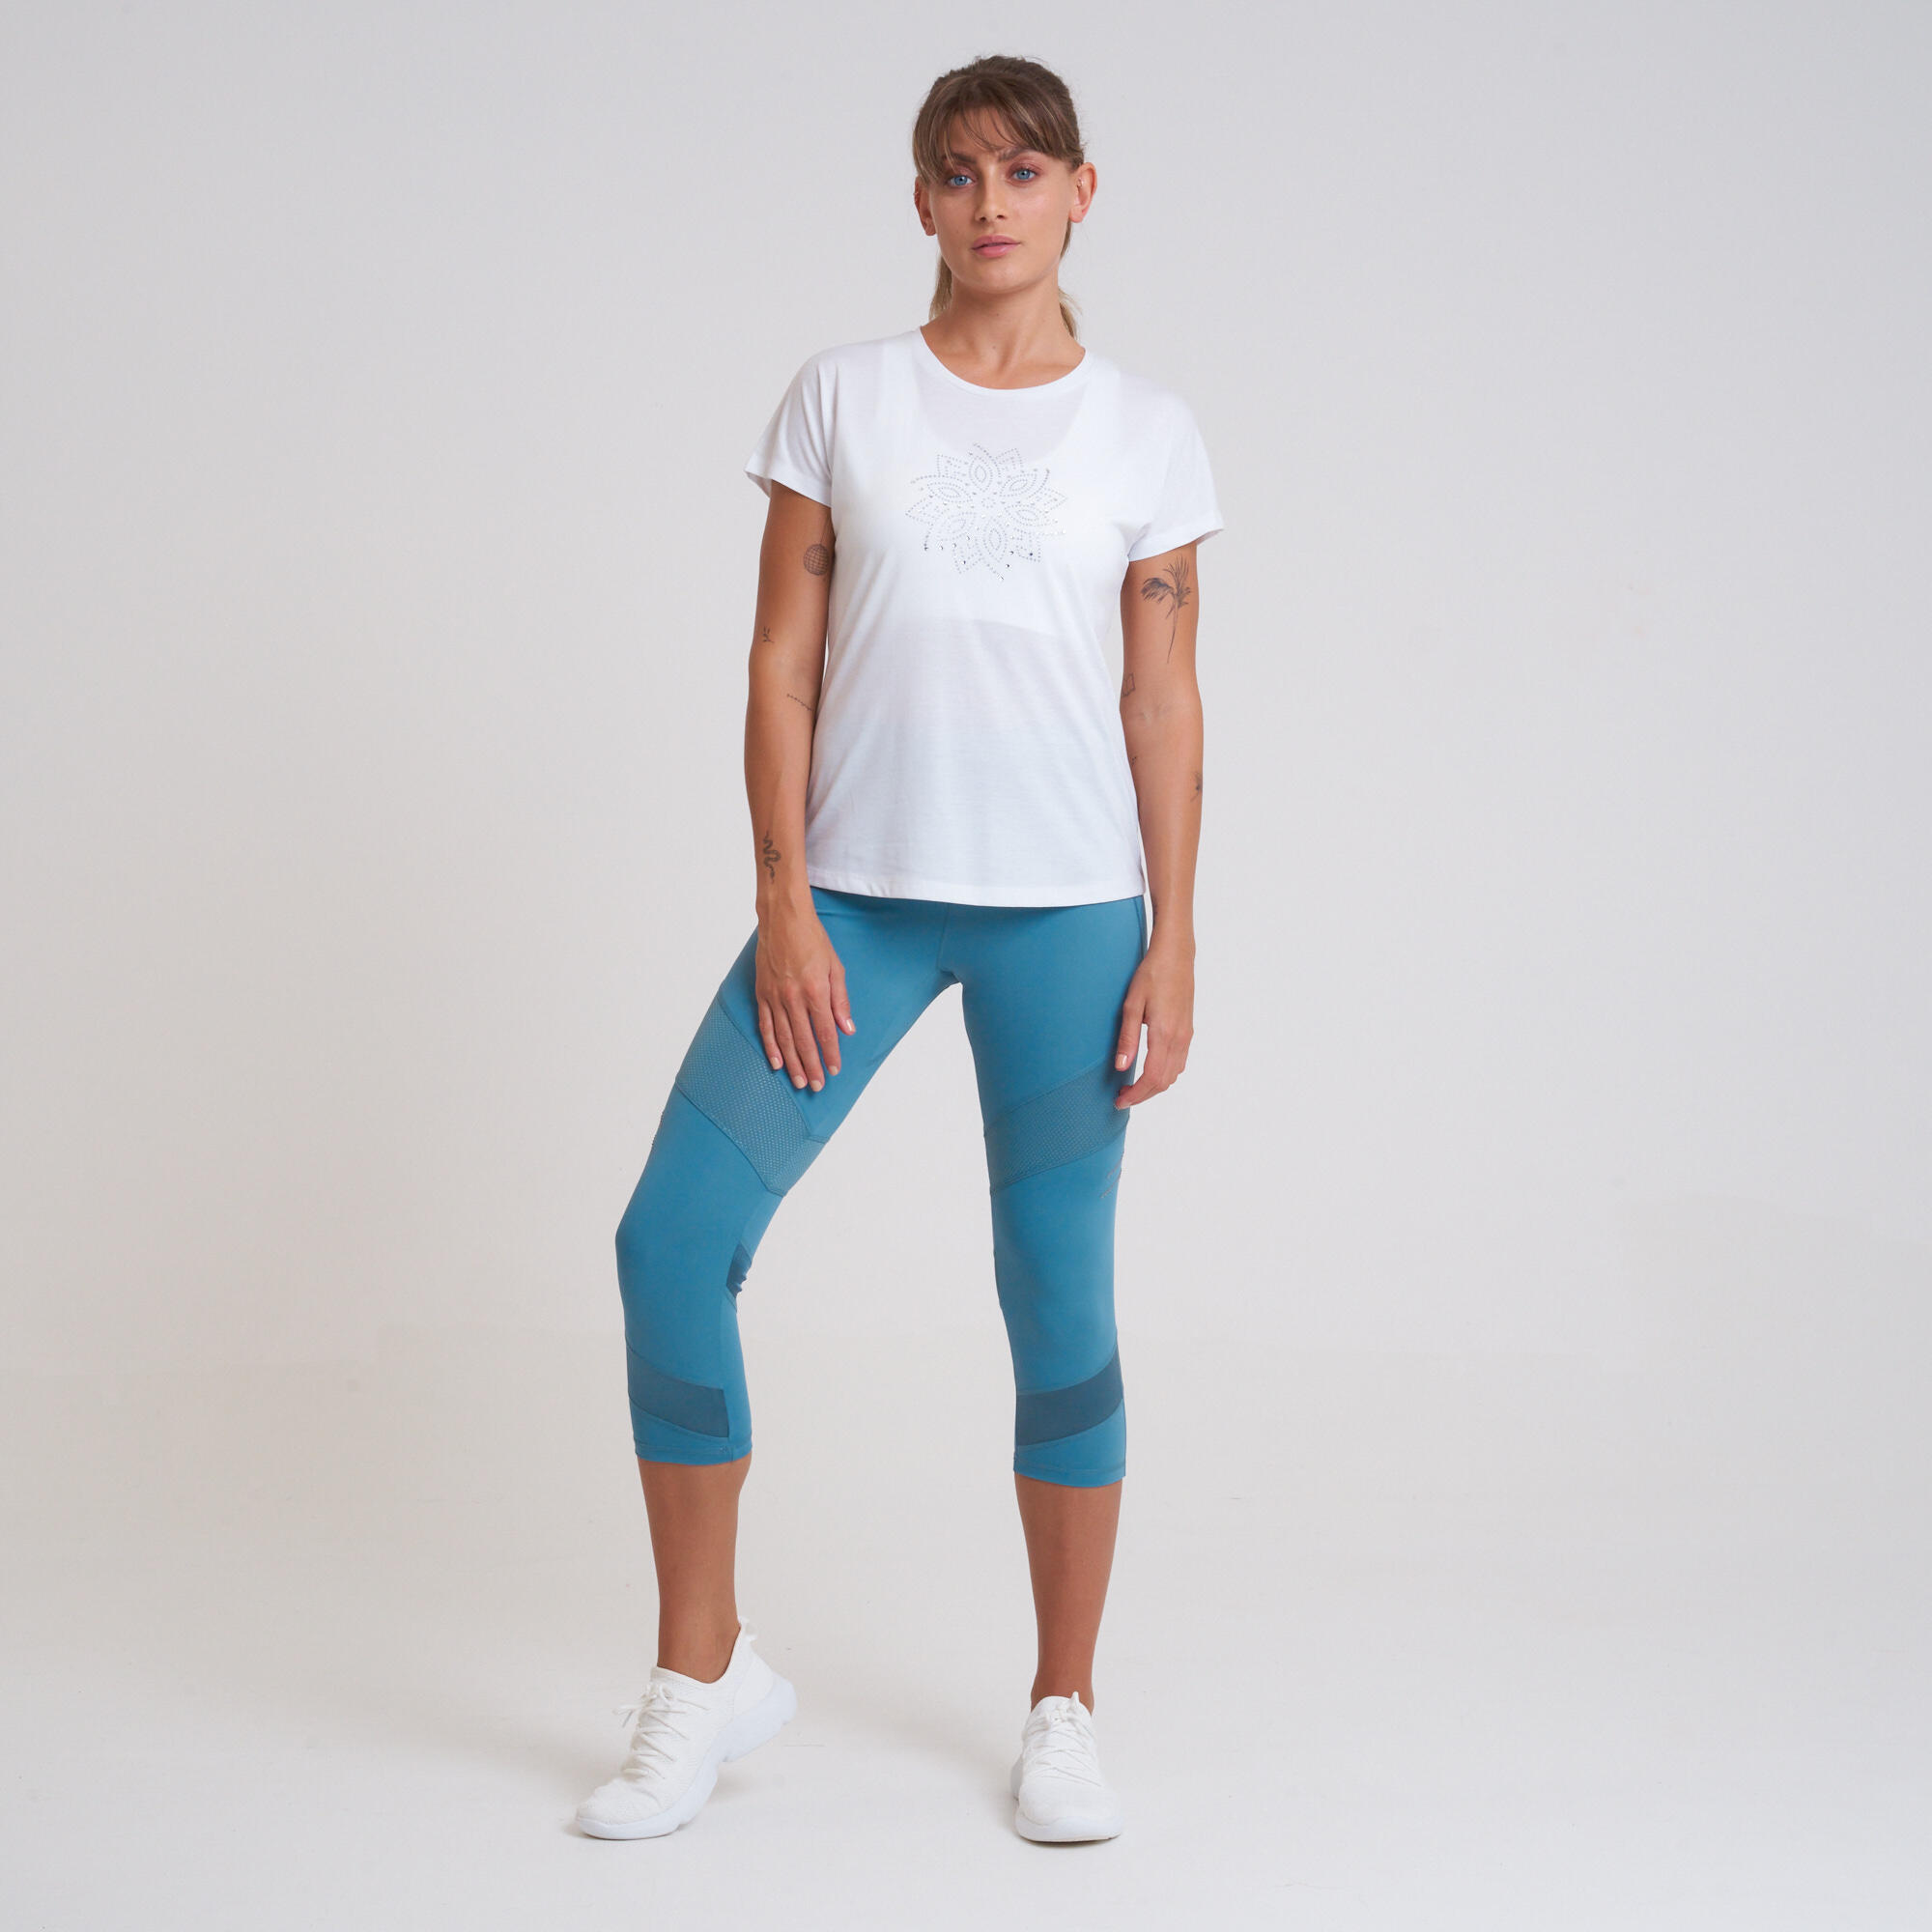 Crystallize Women's Fitness Short Sleeve  T-Shirt - White 2/5